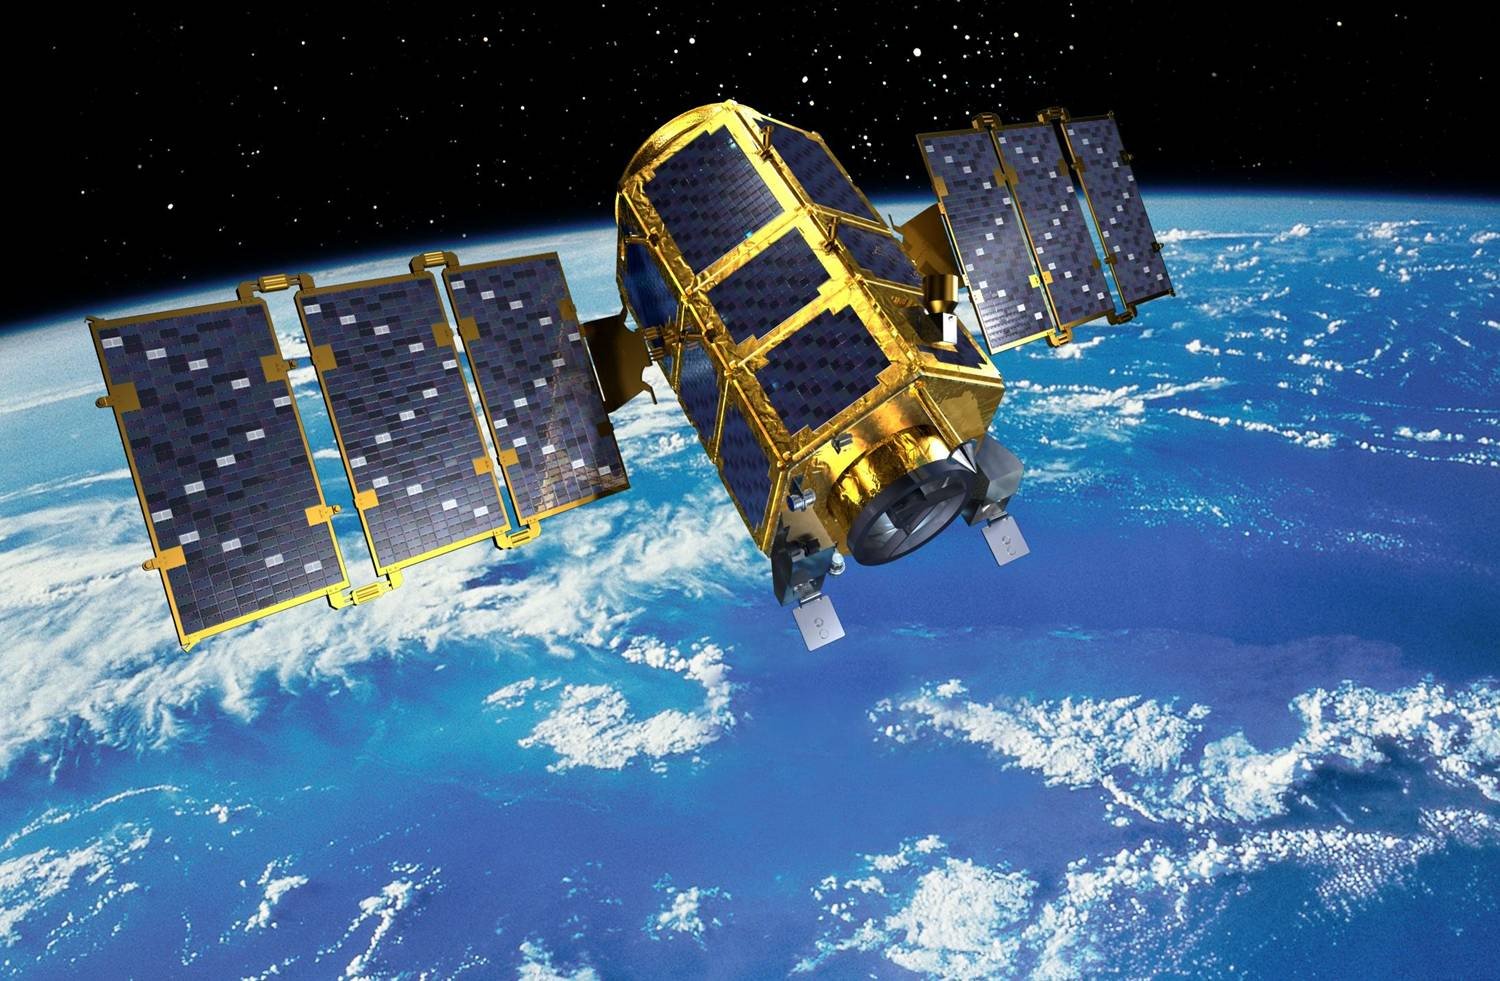 Ανησυχία προκαλεί στις ΗΠΑ ρωσικός δορυφόρος – Φοβούνται ότι πρόκειται για «κυνηγό δορυφόρων»